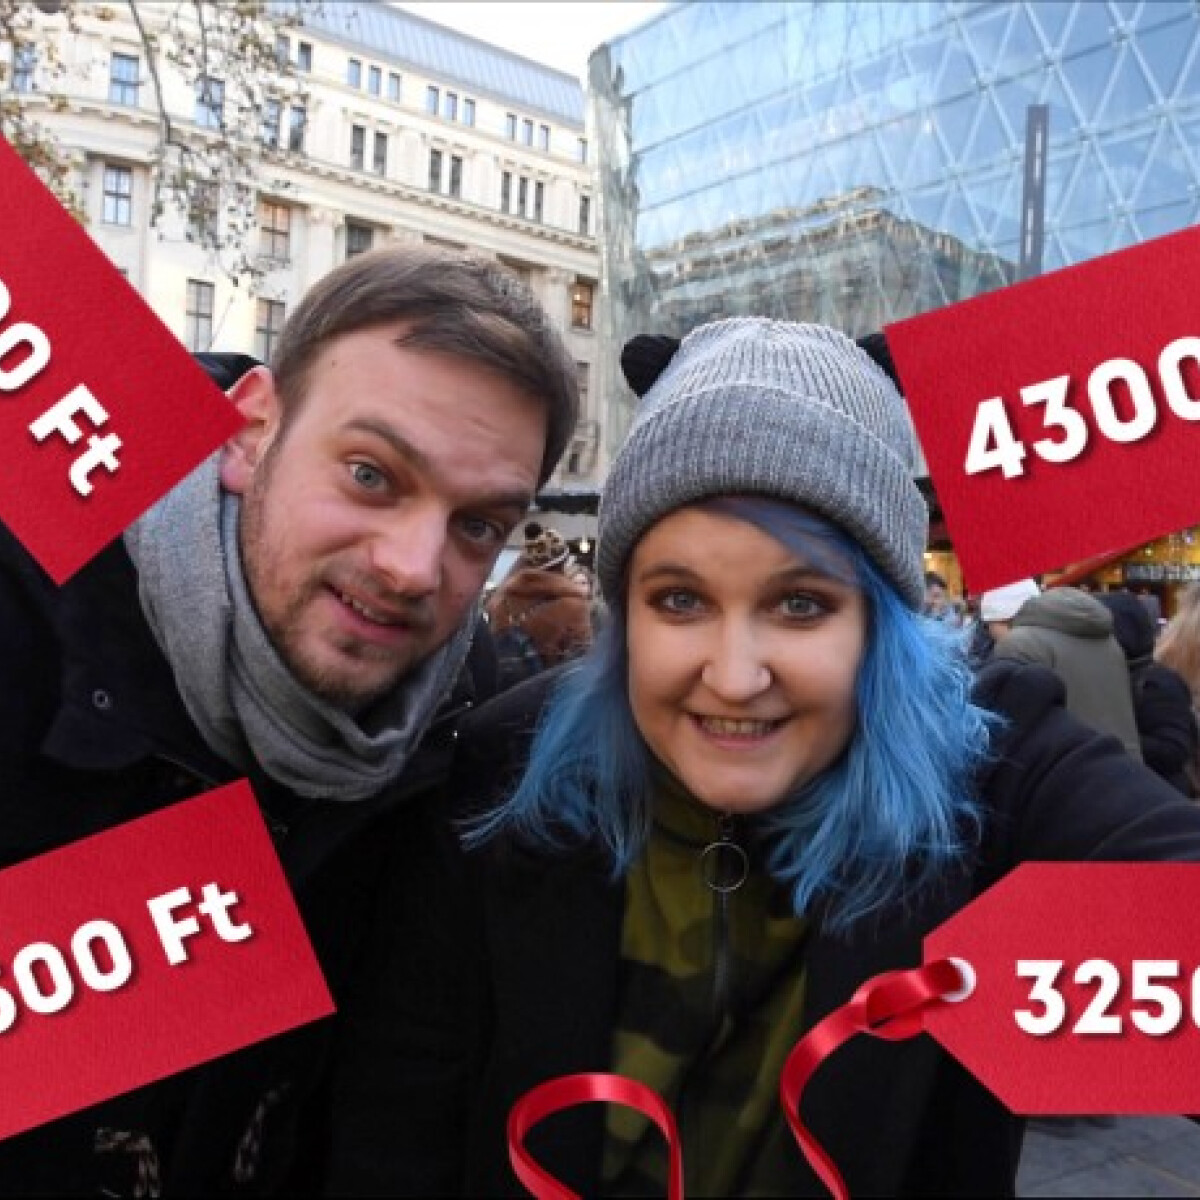 3250 Ft-os töltött káposzta és zsömlébe tömött pörkölt 3500-ért – budapesti karácsonyi vásárokban jártunk